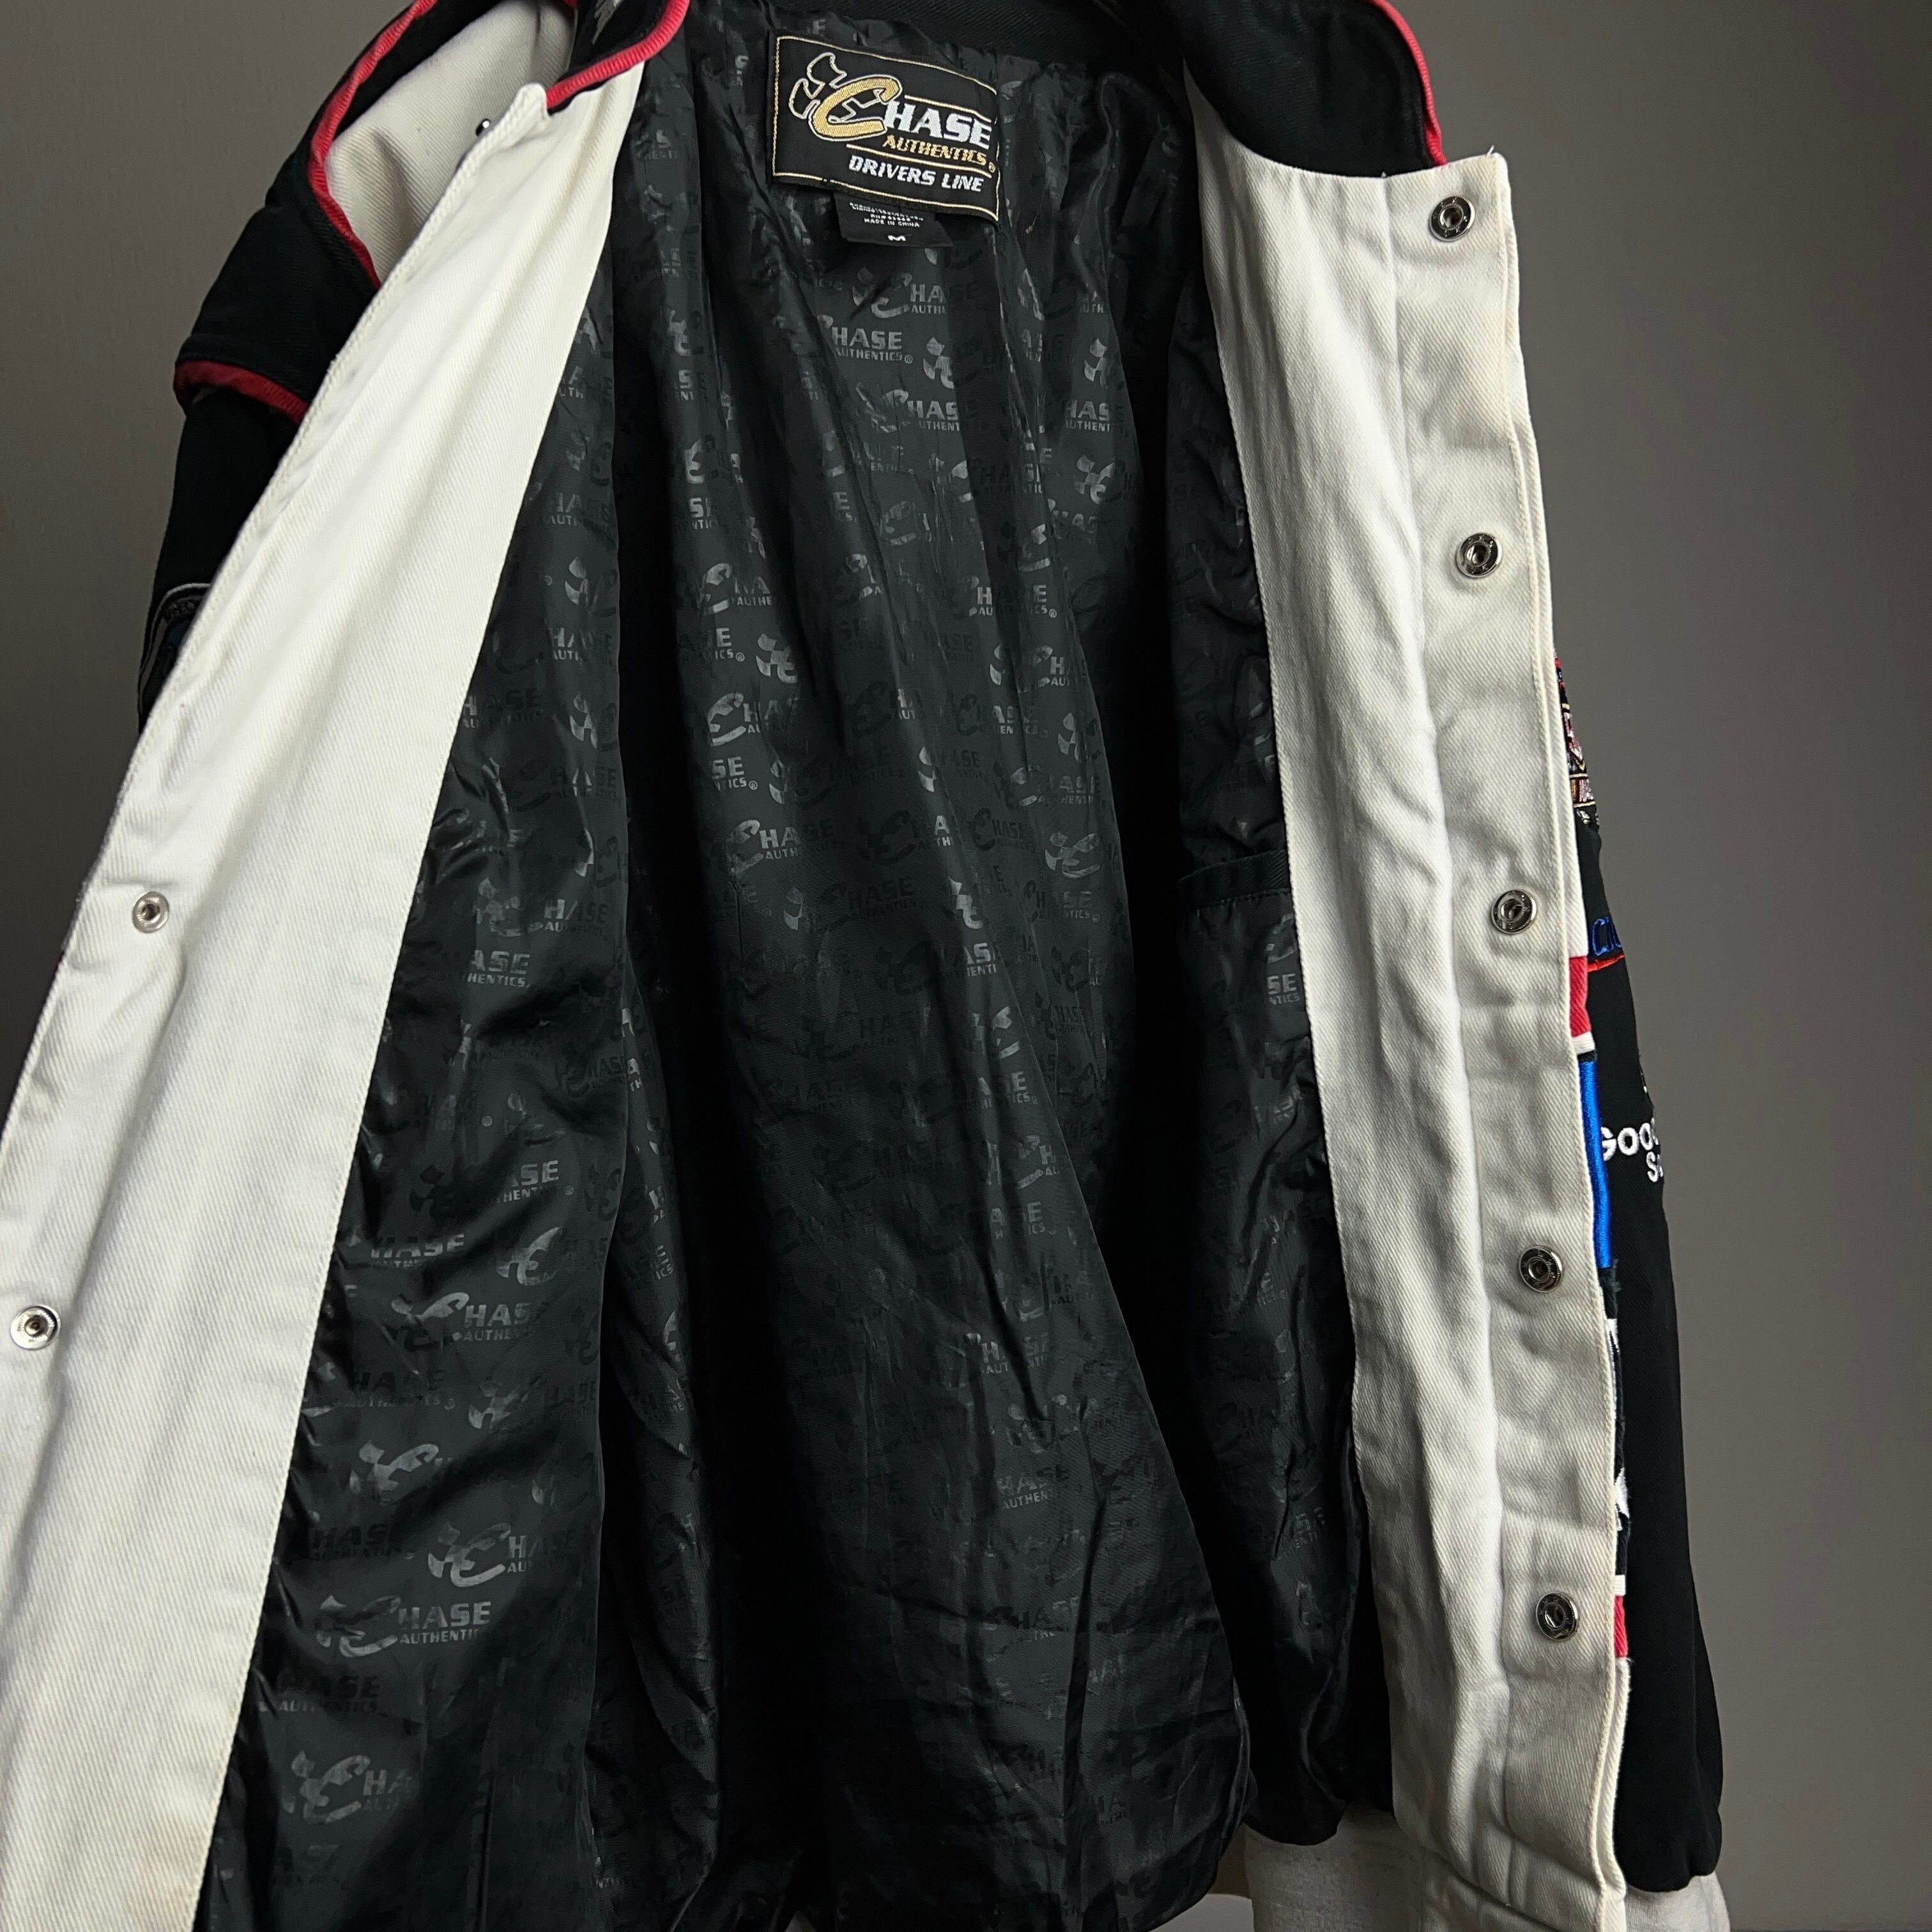 CHASE AUTHENTICS Racing Jacket SIZE M レーシングジャケット 刺繍